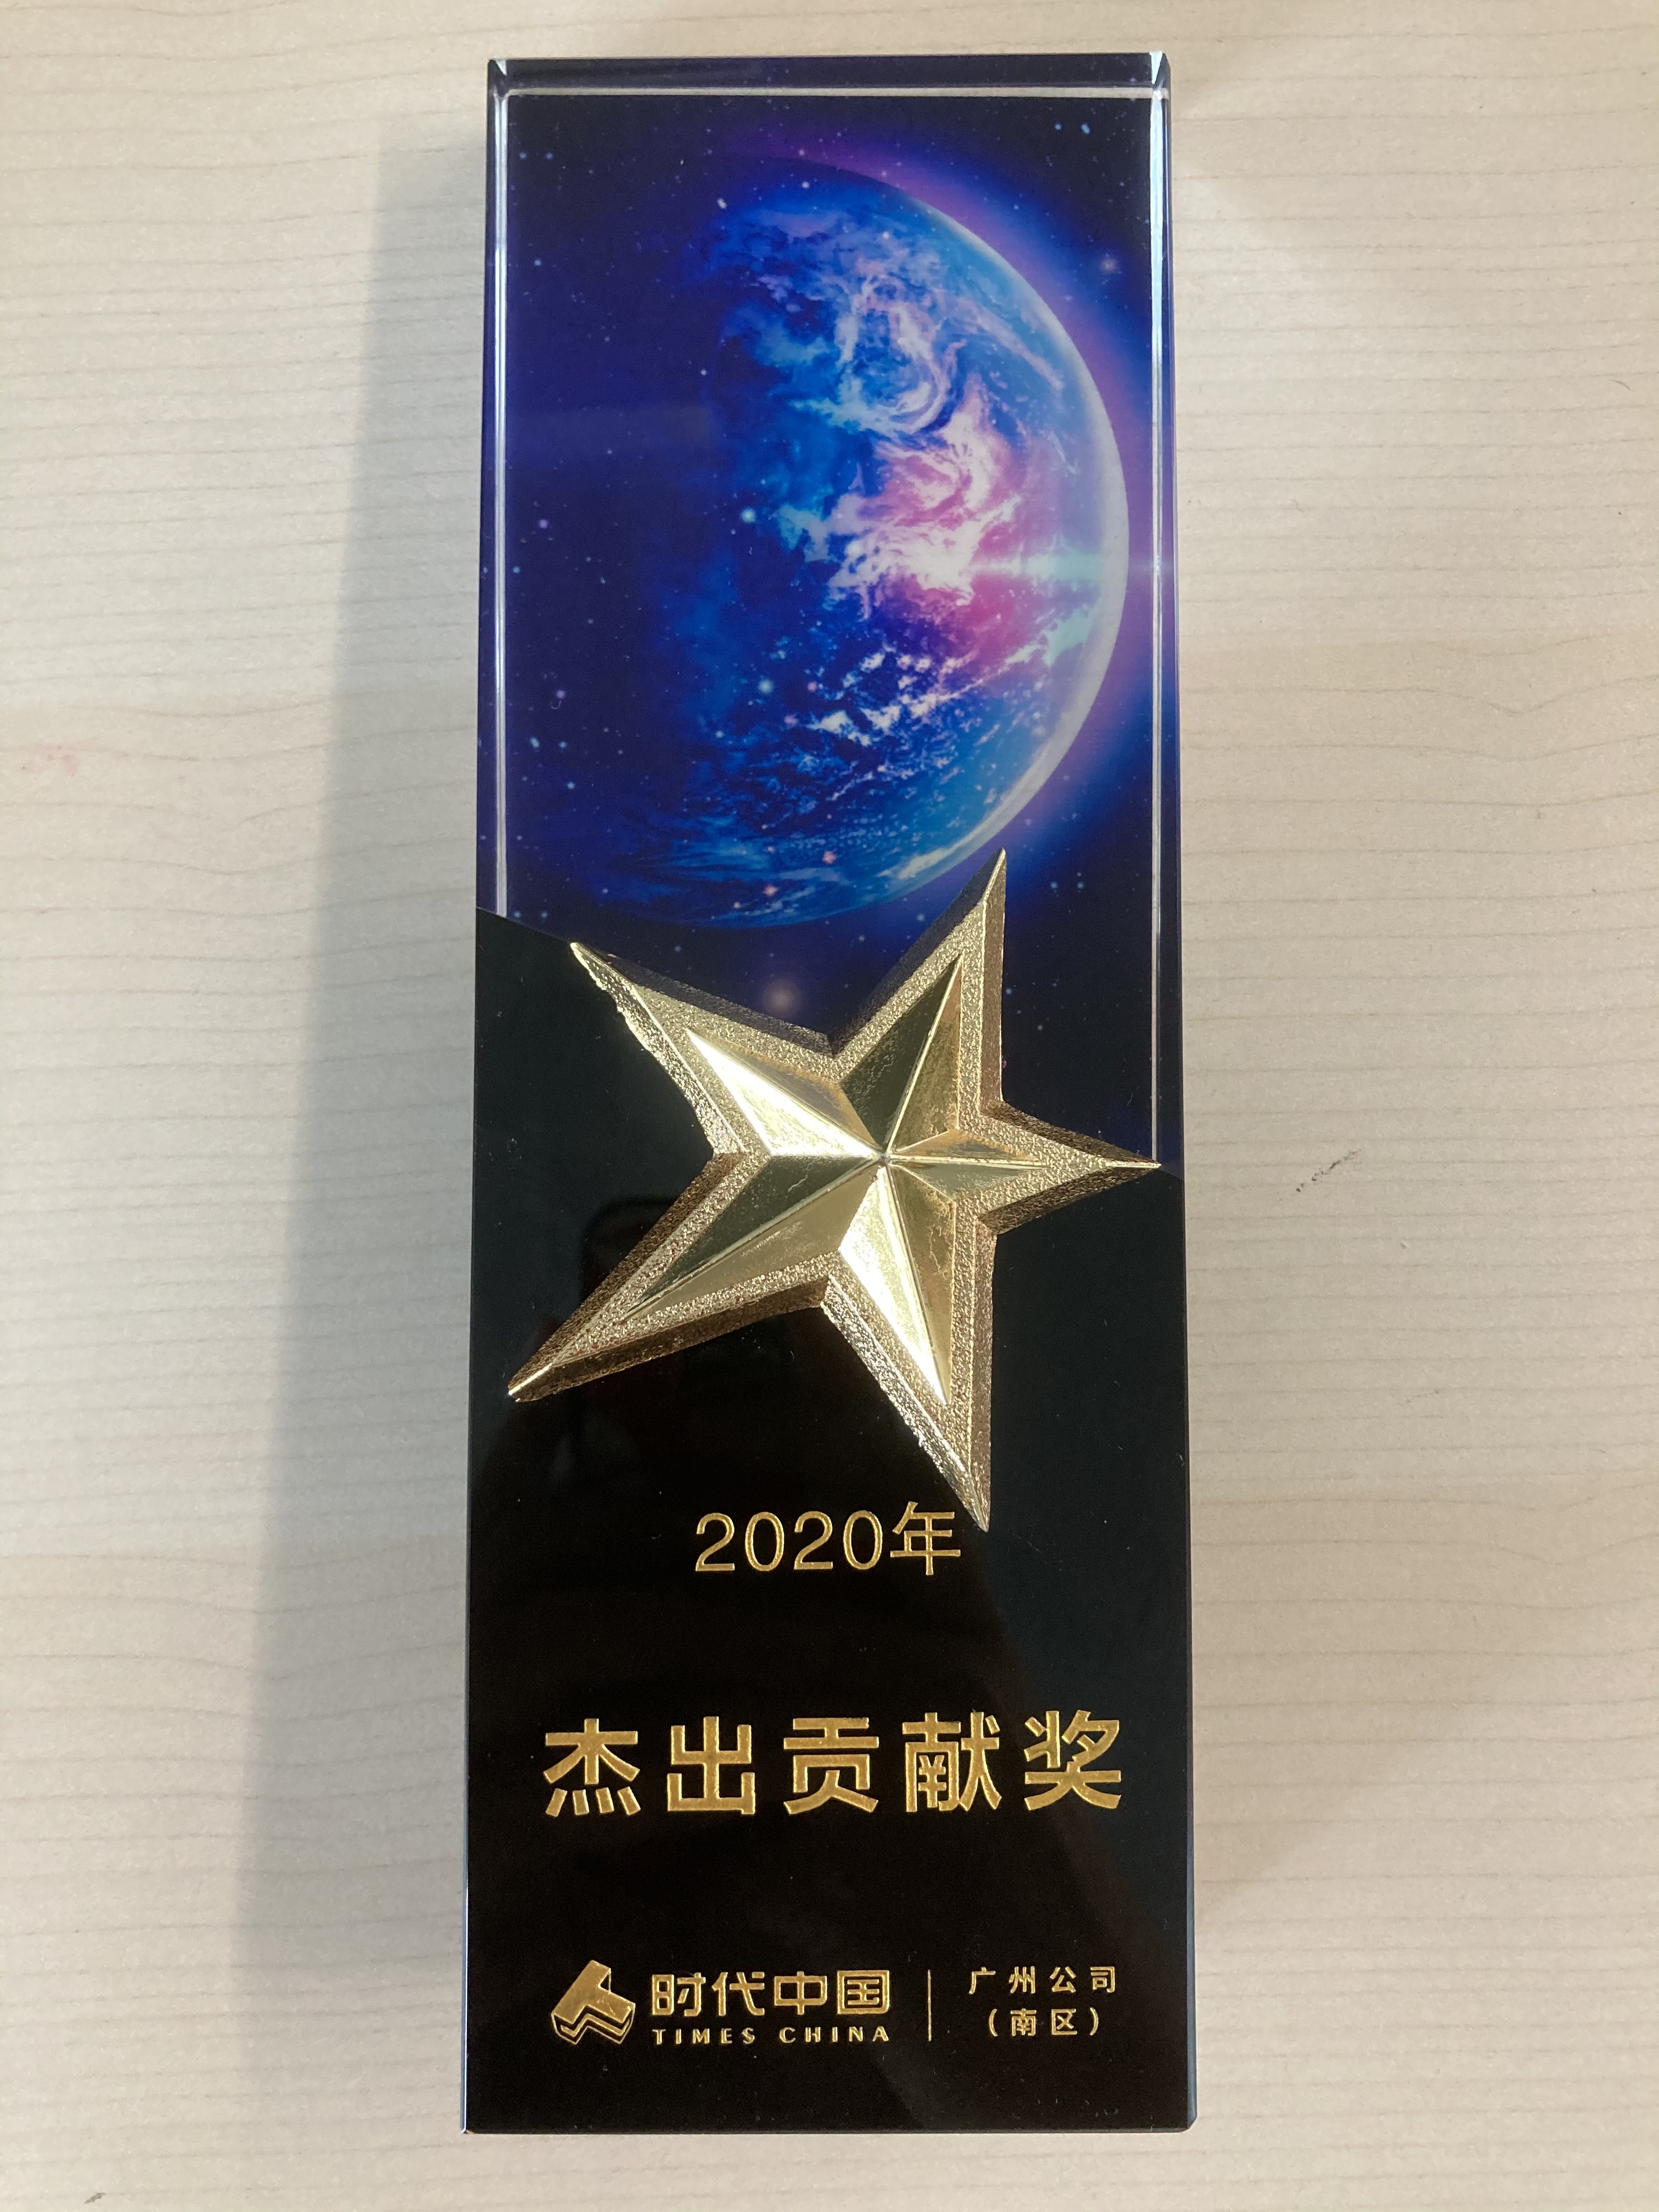 2020年 杰出贡献奖-时代中国